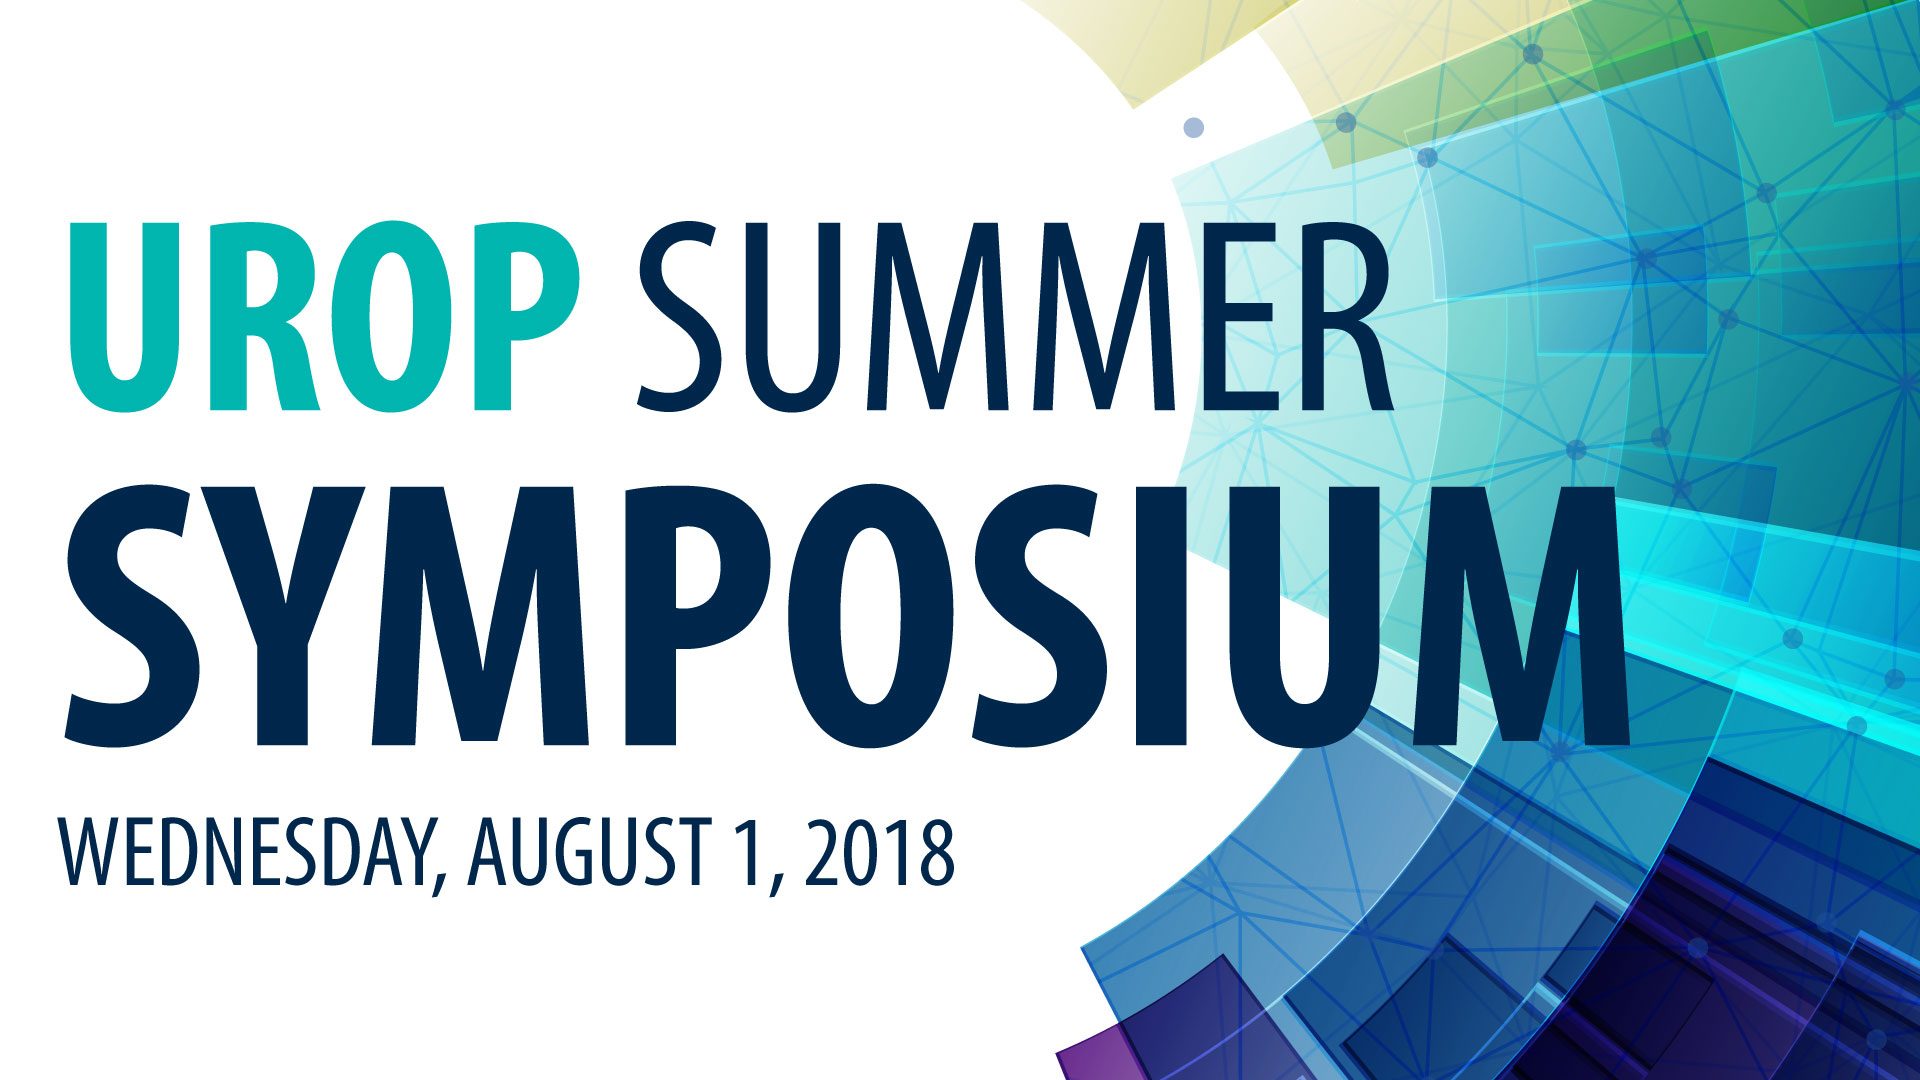 UROP Summer Symposium Wednesday, August 1, 2018